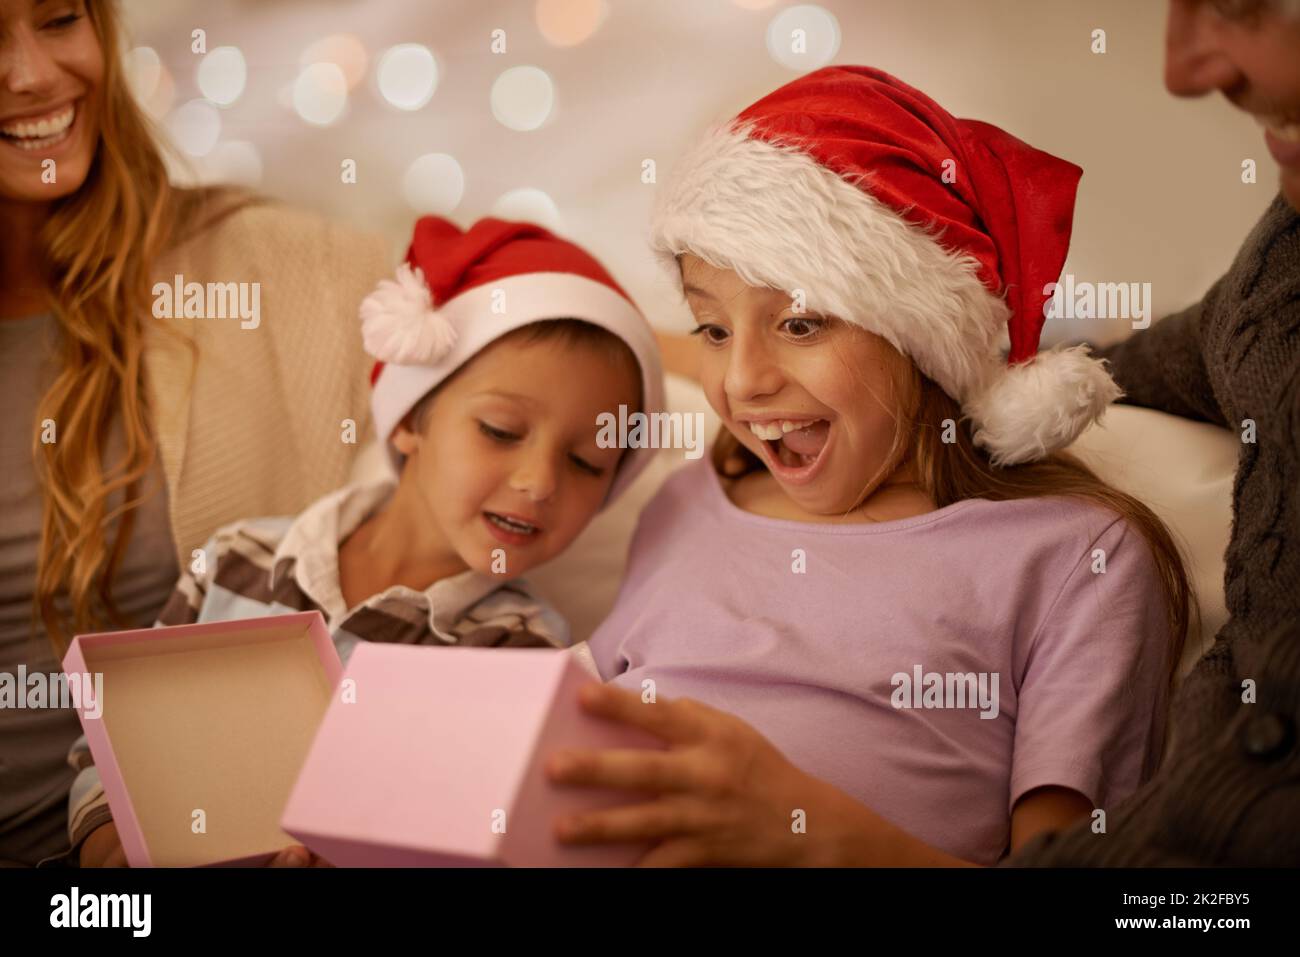 Genau das, was ich wollte. Ein kleines Mädchen wickelte ein Weihnachtsgeschenk aus, während es von ihrer Familie umgeben war. Stockfoto